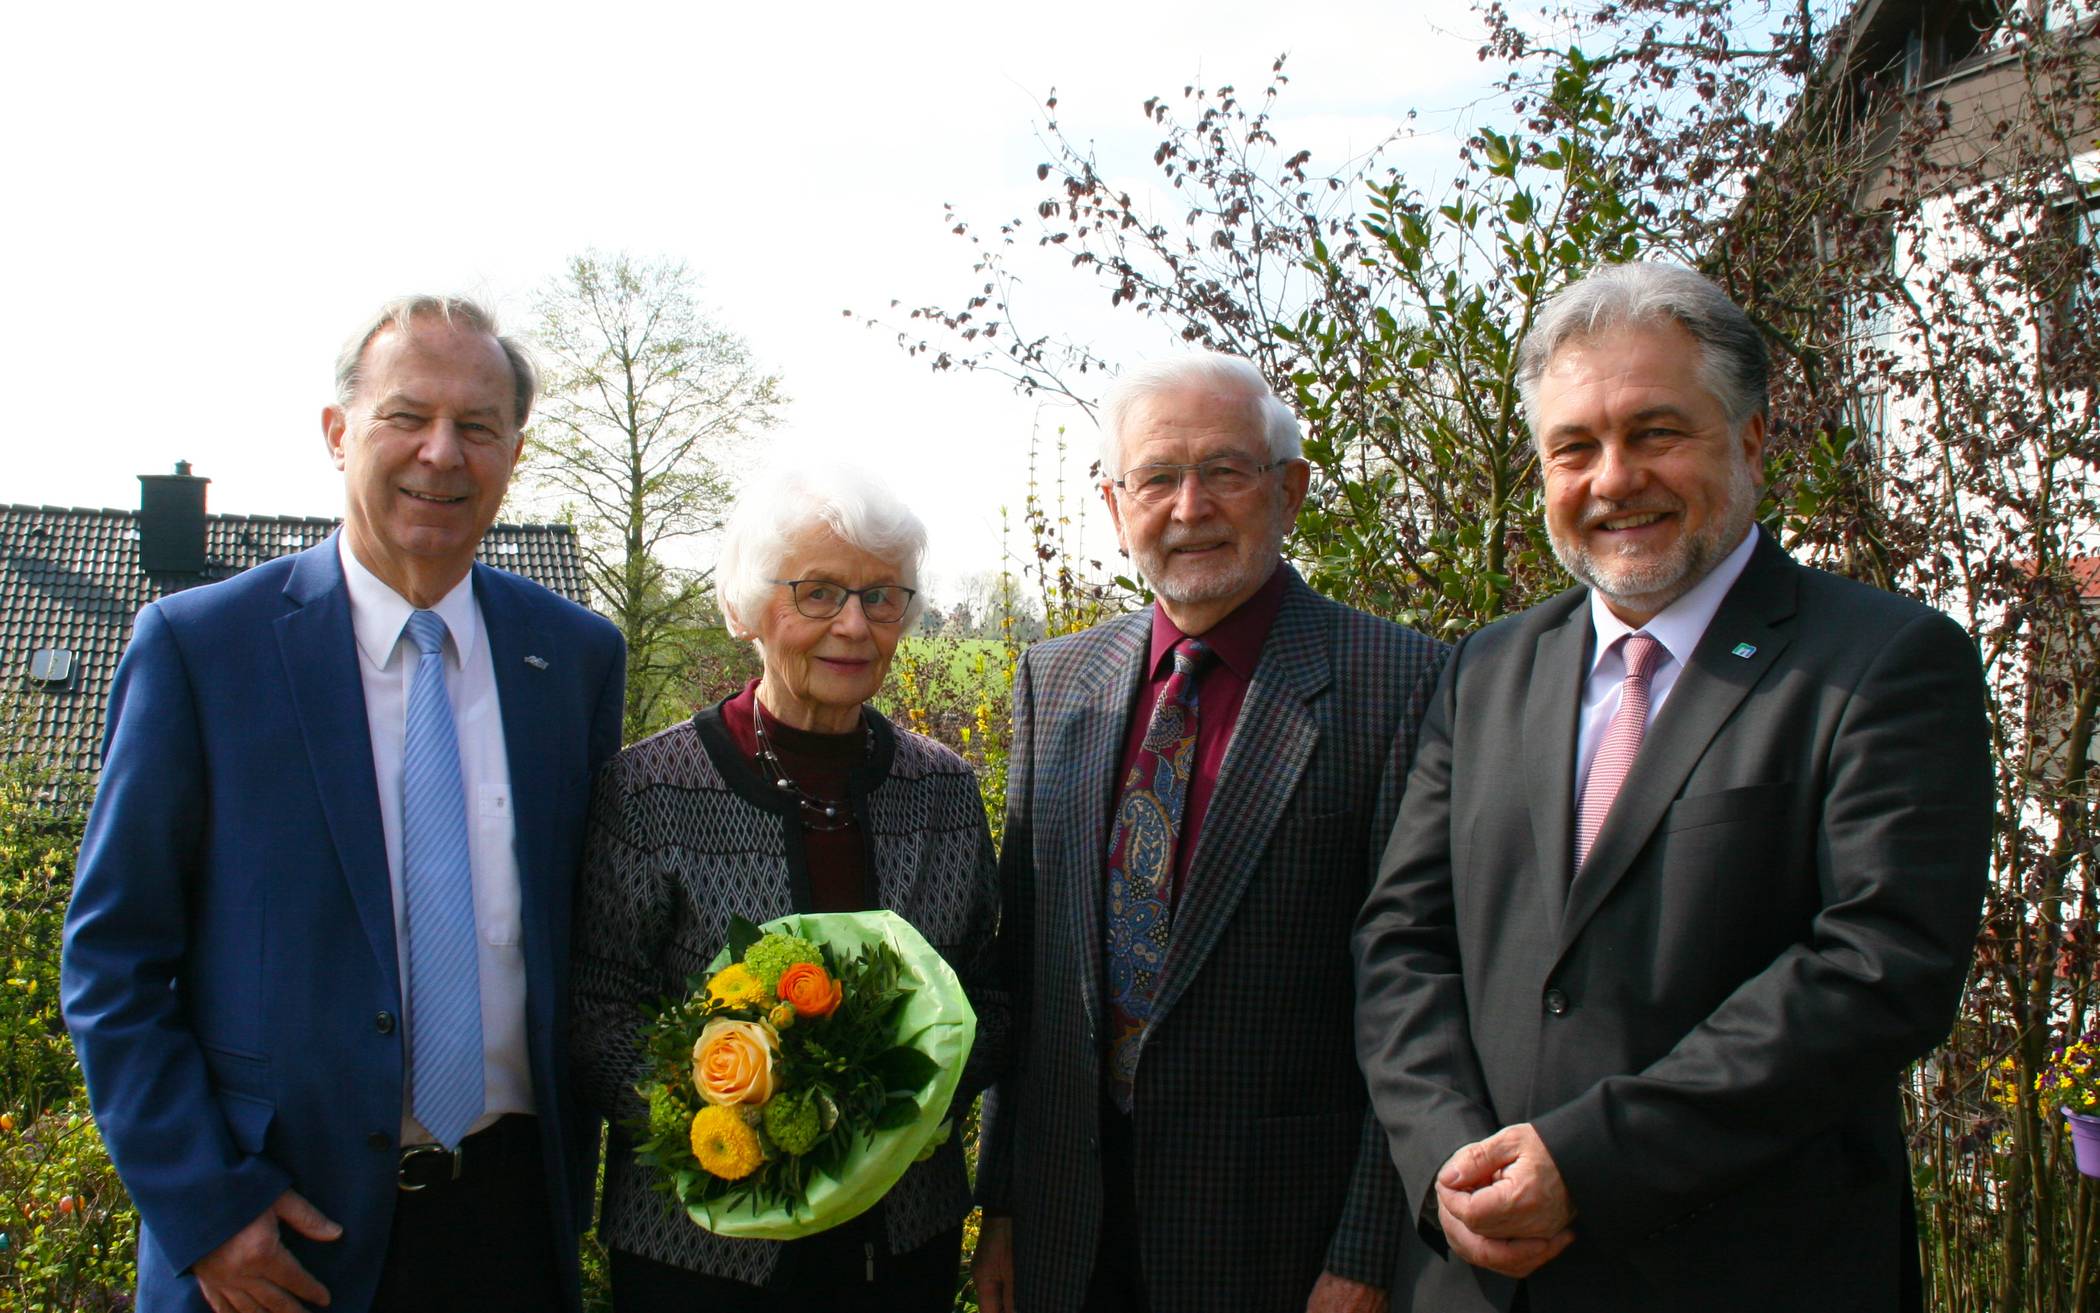  Cäcilie und Heinz Streckel konnten zu ihrer Diamantenen Hochzeit den stellvertretenden Landrat Michael Ruppert (l.) und Bürgermeister Thomas Dinkelmann (r.) begrüßen. 